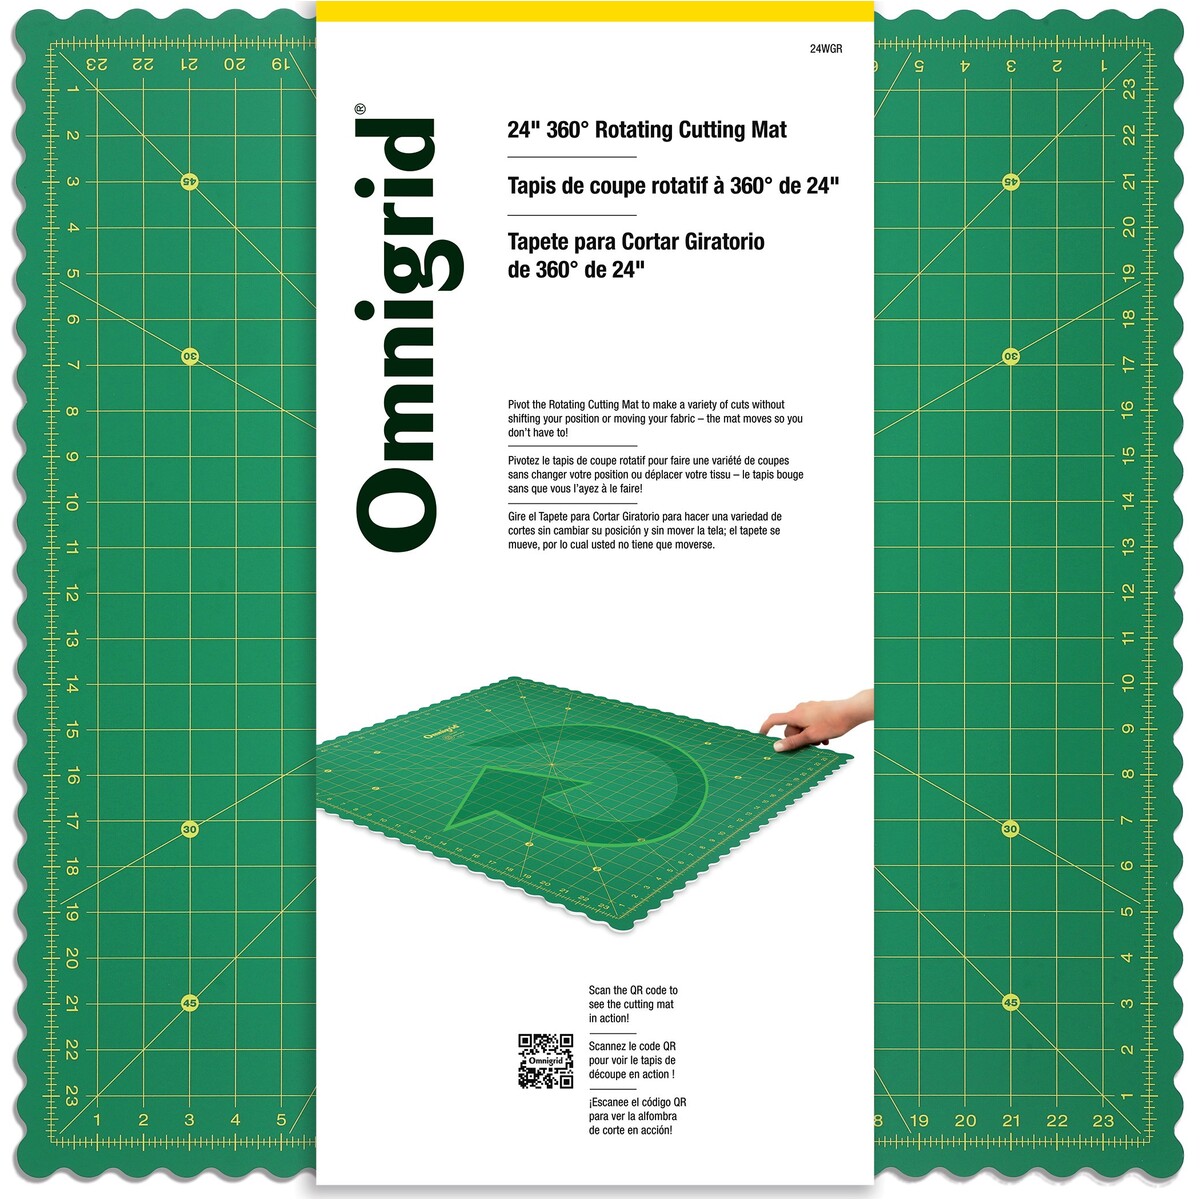 Olfa Folding Cutting Mat 17 in x 24 in